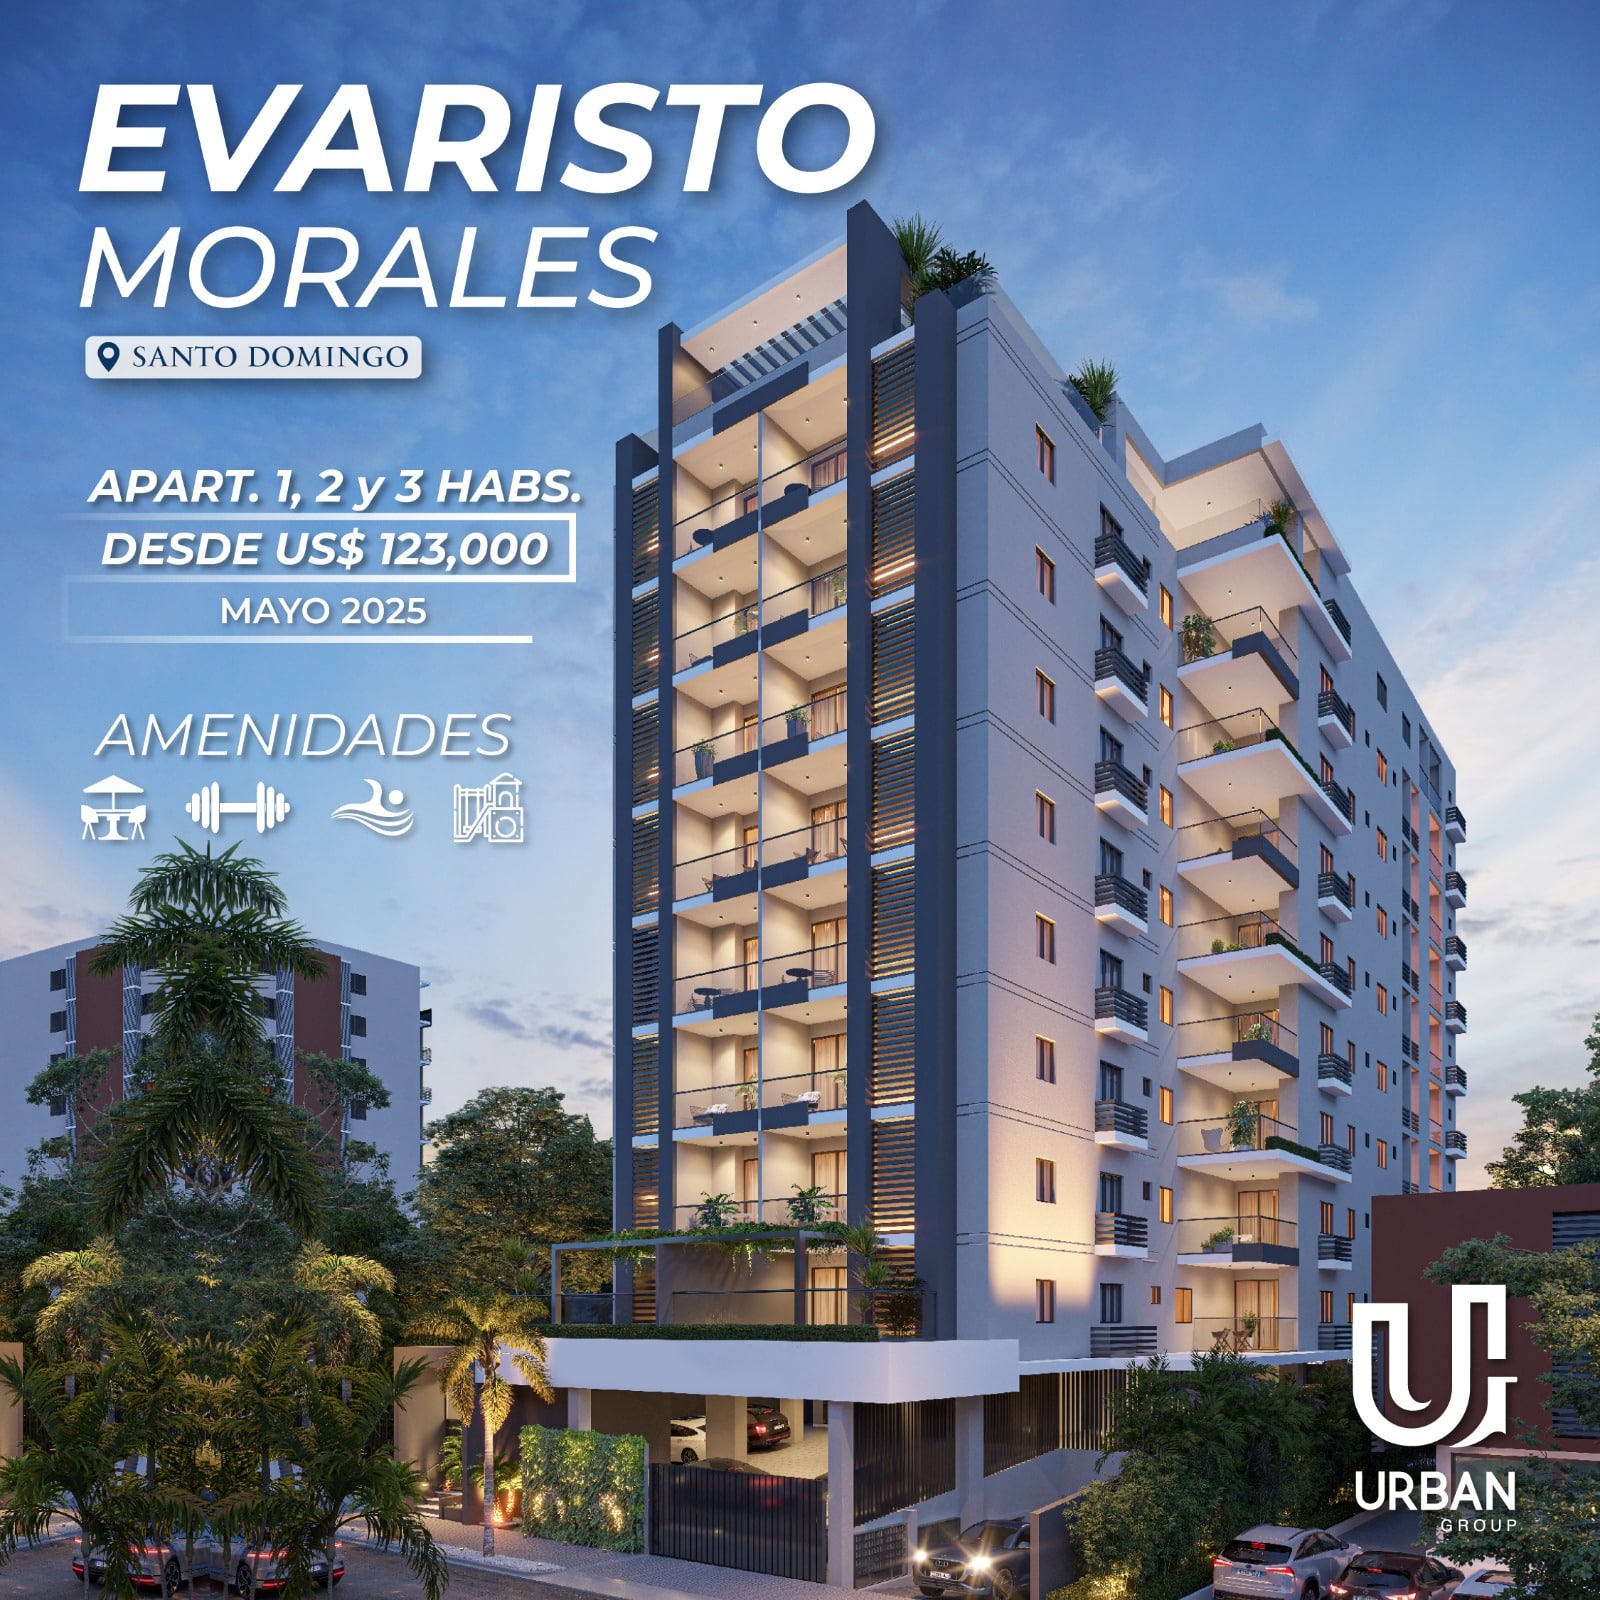 Apartamentos en Evaristo Morales Desde US$123,000